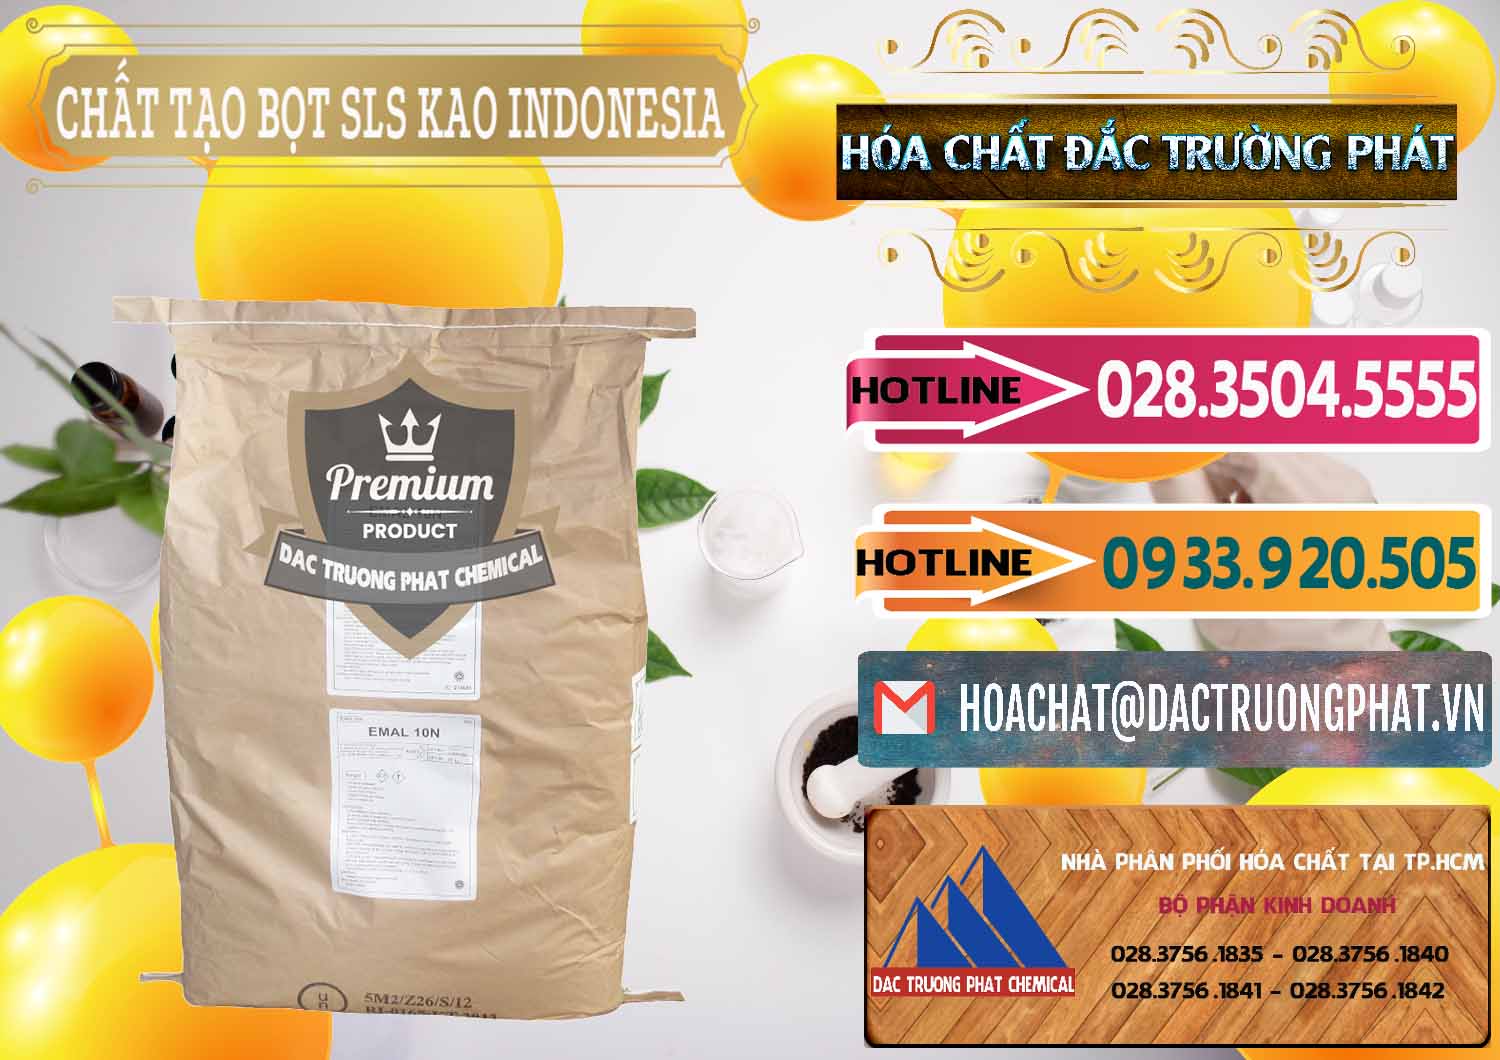 Nơi bán và phân phối Chất Tạo Bọt SLS - Sodium Lauryl Sulfate EMAL 10N KAO Indonesia - 0047 - Cung cấp _ kinh doanh hóa chất tại TP.HCM - dactruongphat.vn